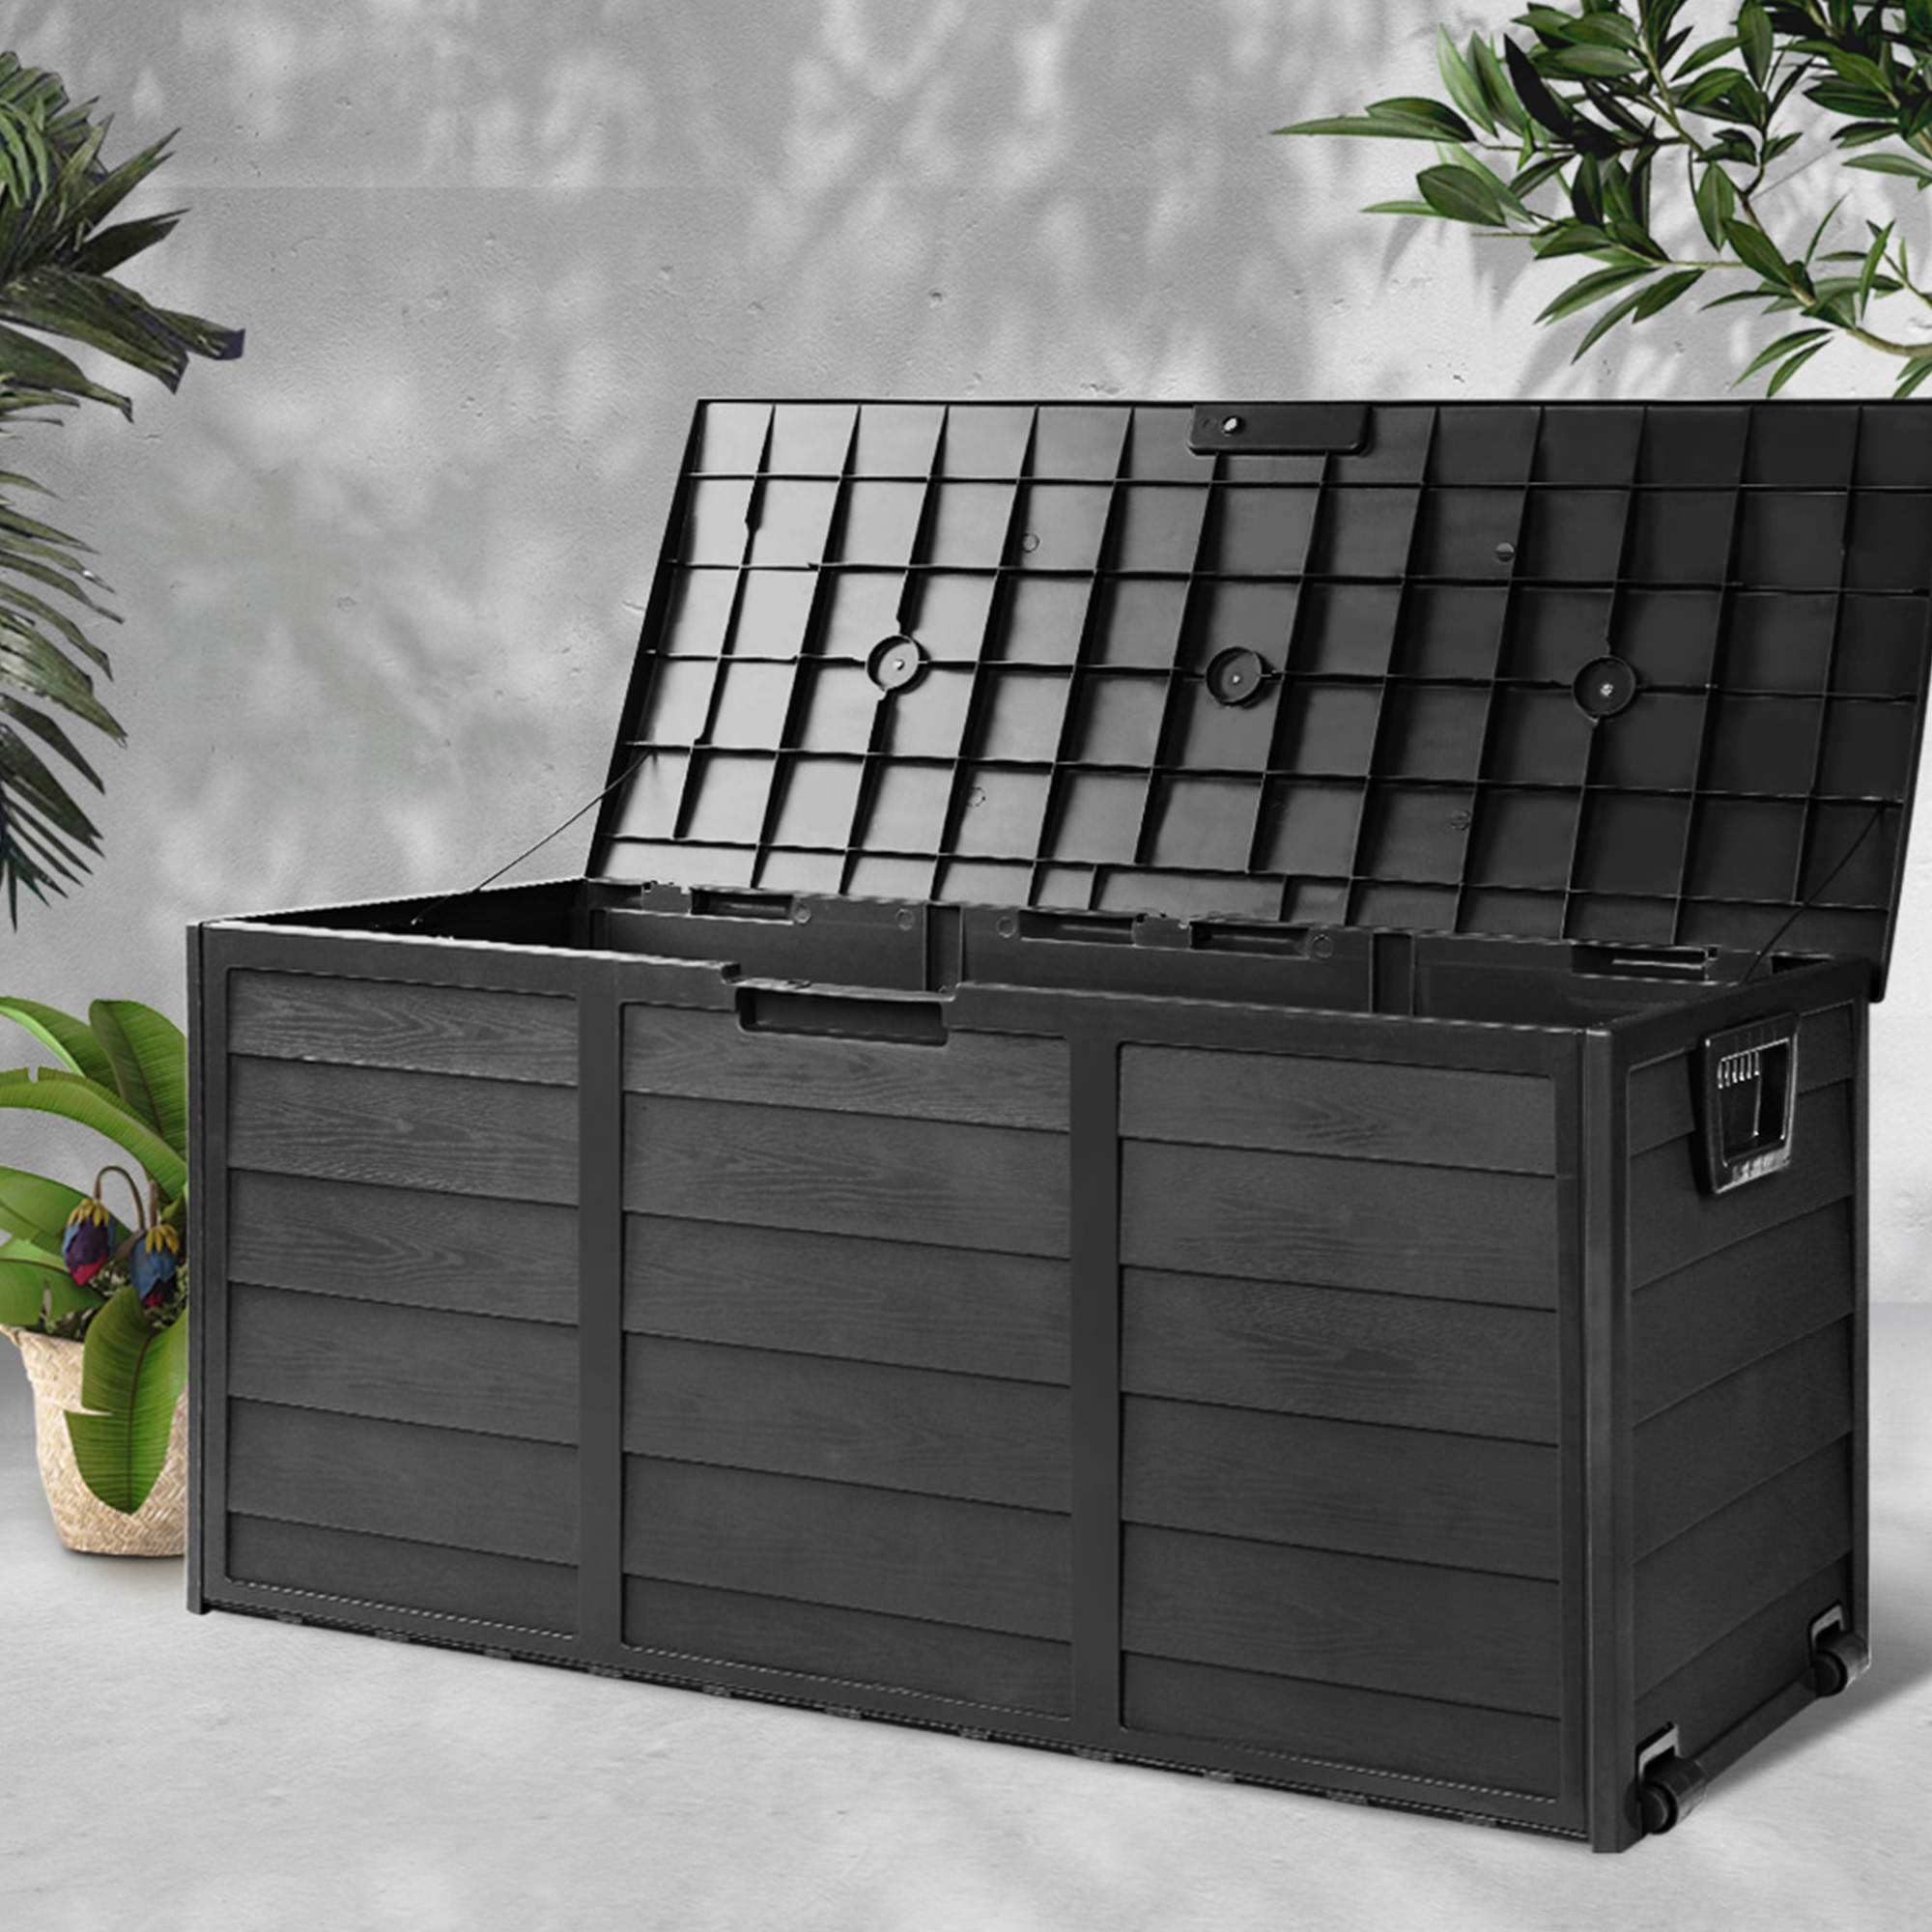 Gardeon Giantz Outdoor Storage Box 290L Black Image 2